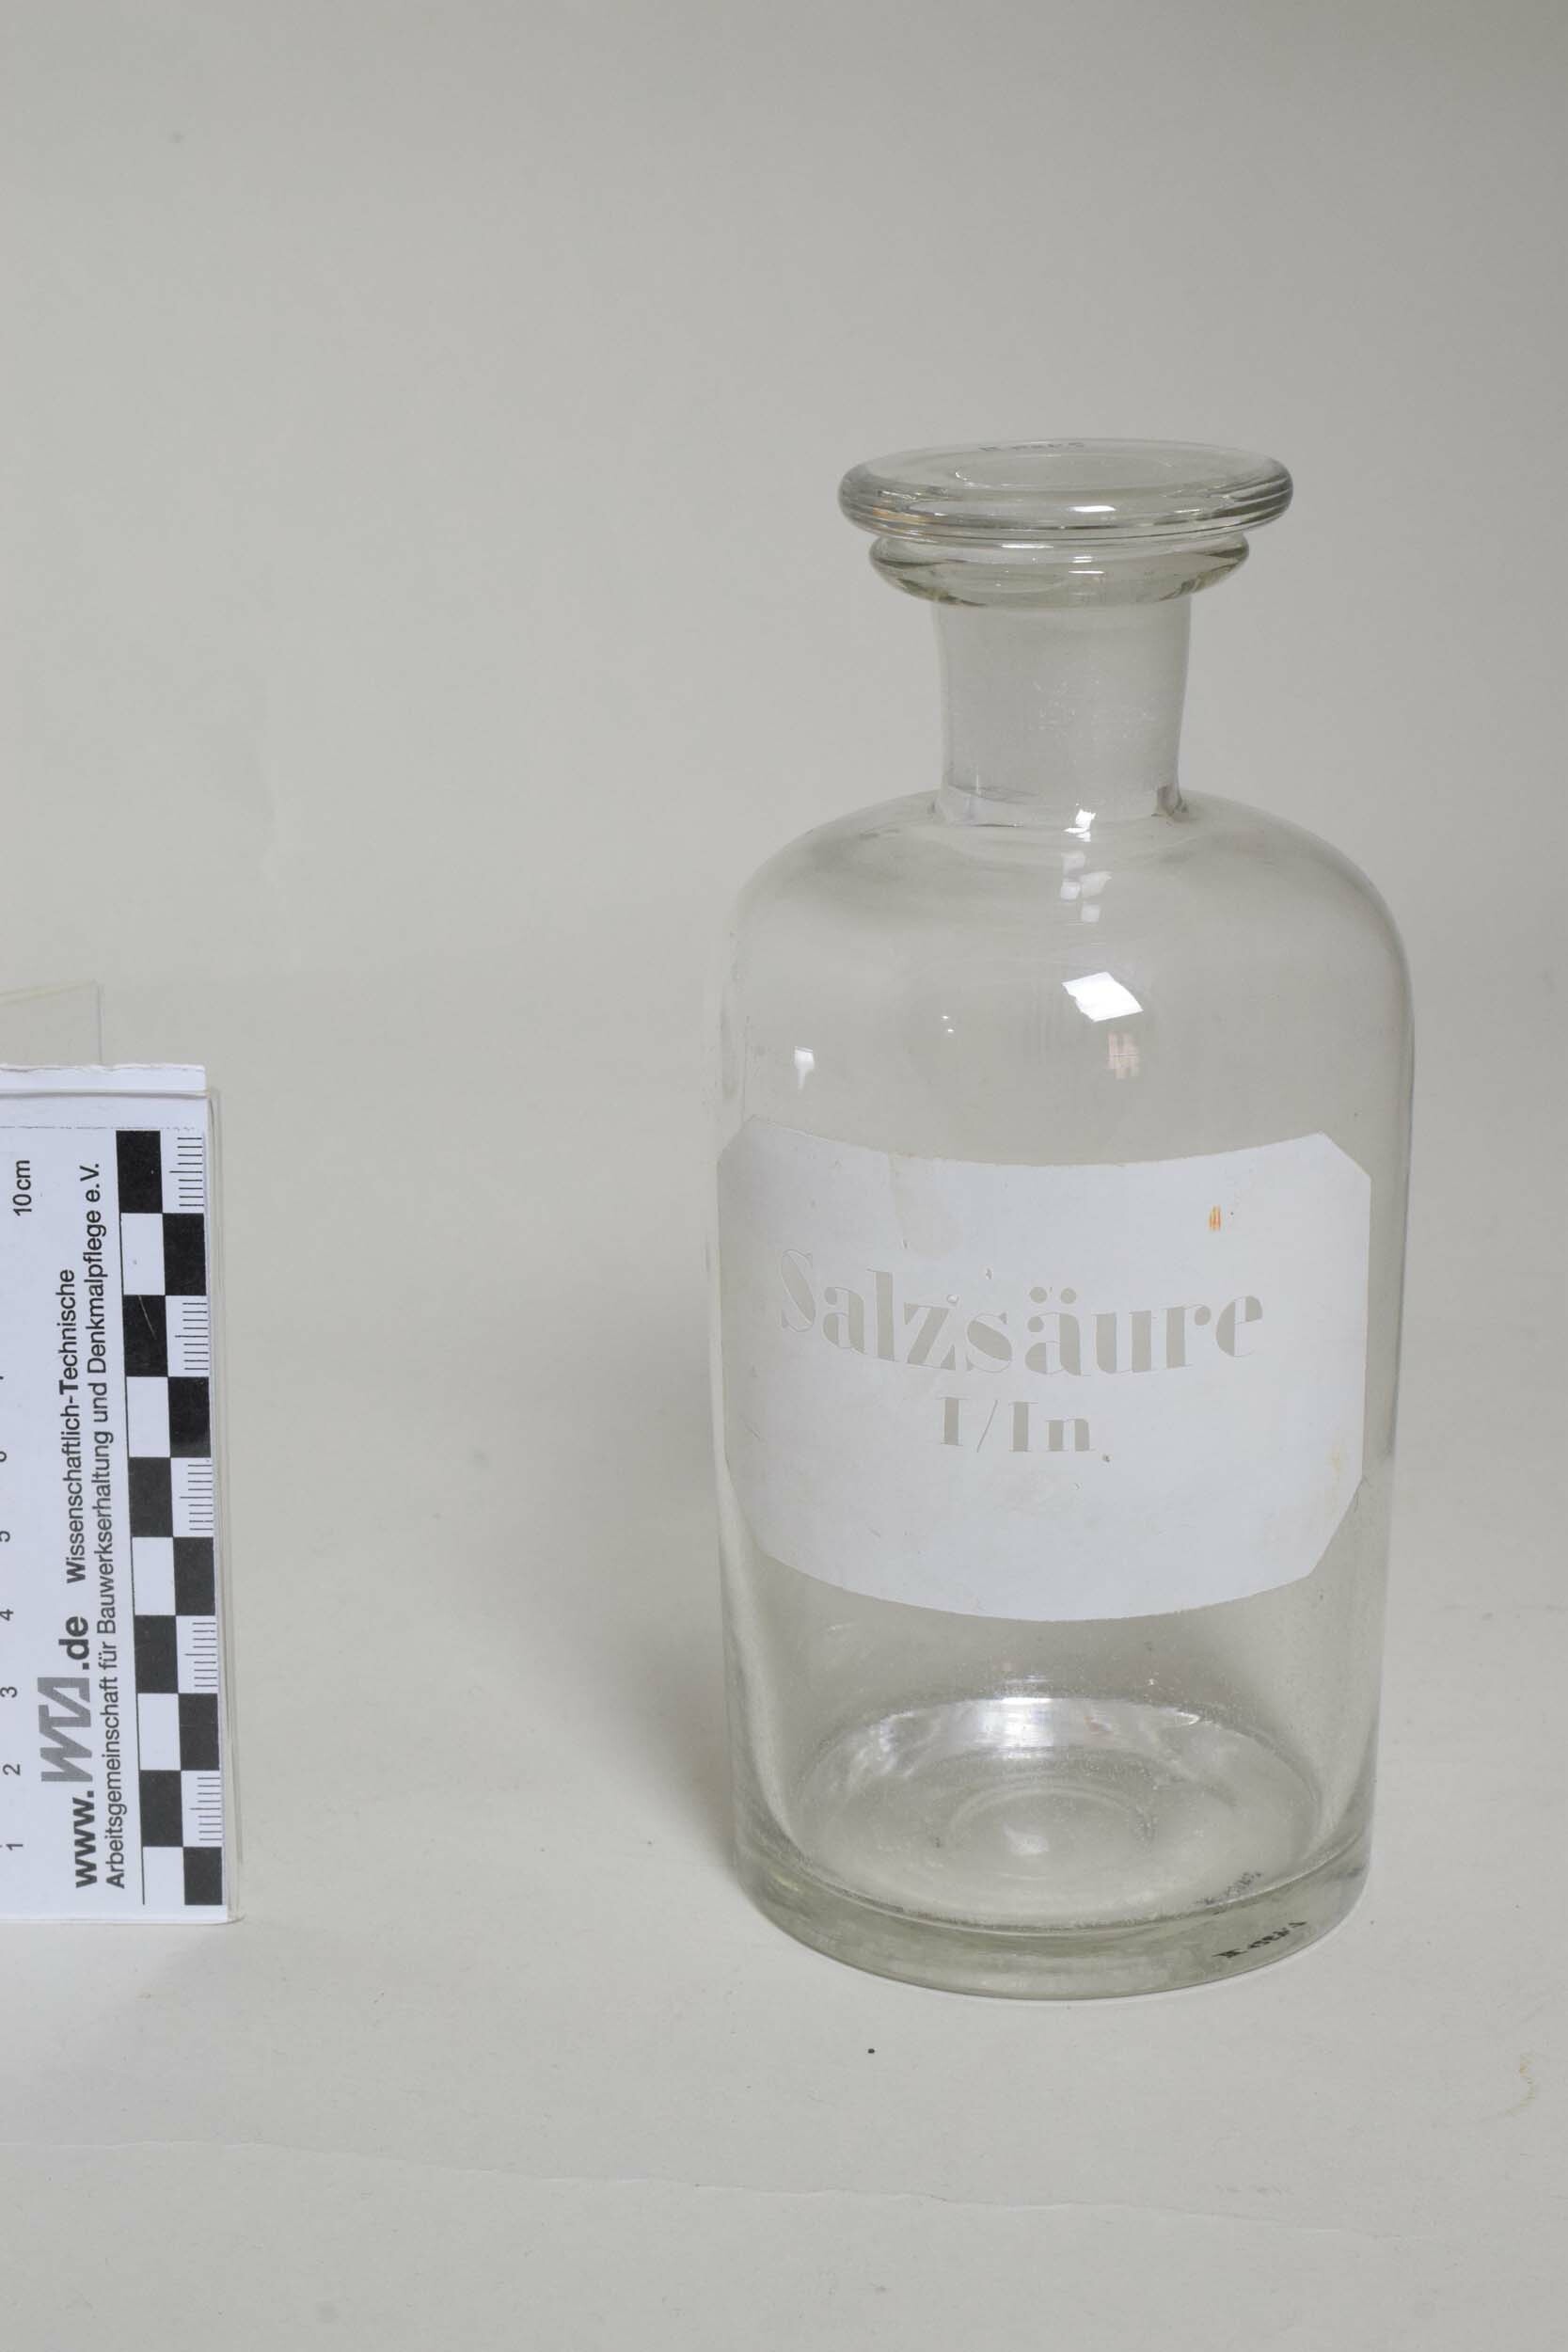 Apothekenflasche "Salzsäure 1/1n" (Heimatmuseum Dohna CC BY-NC-SA)